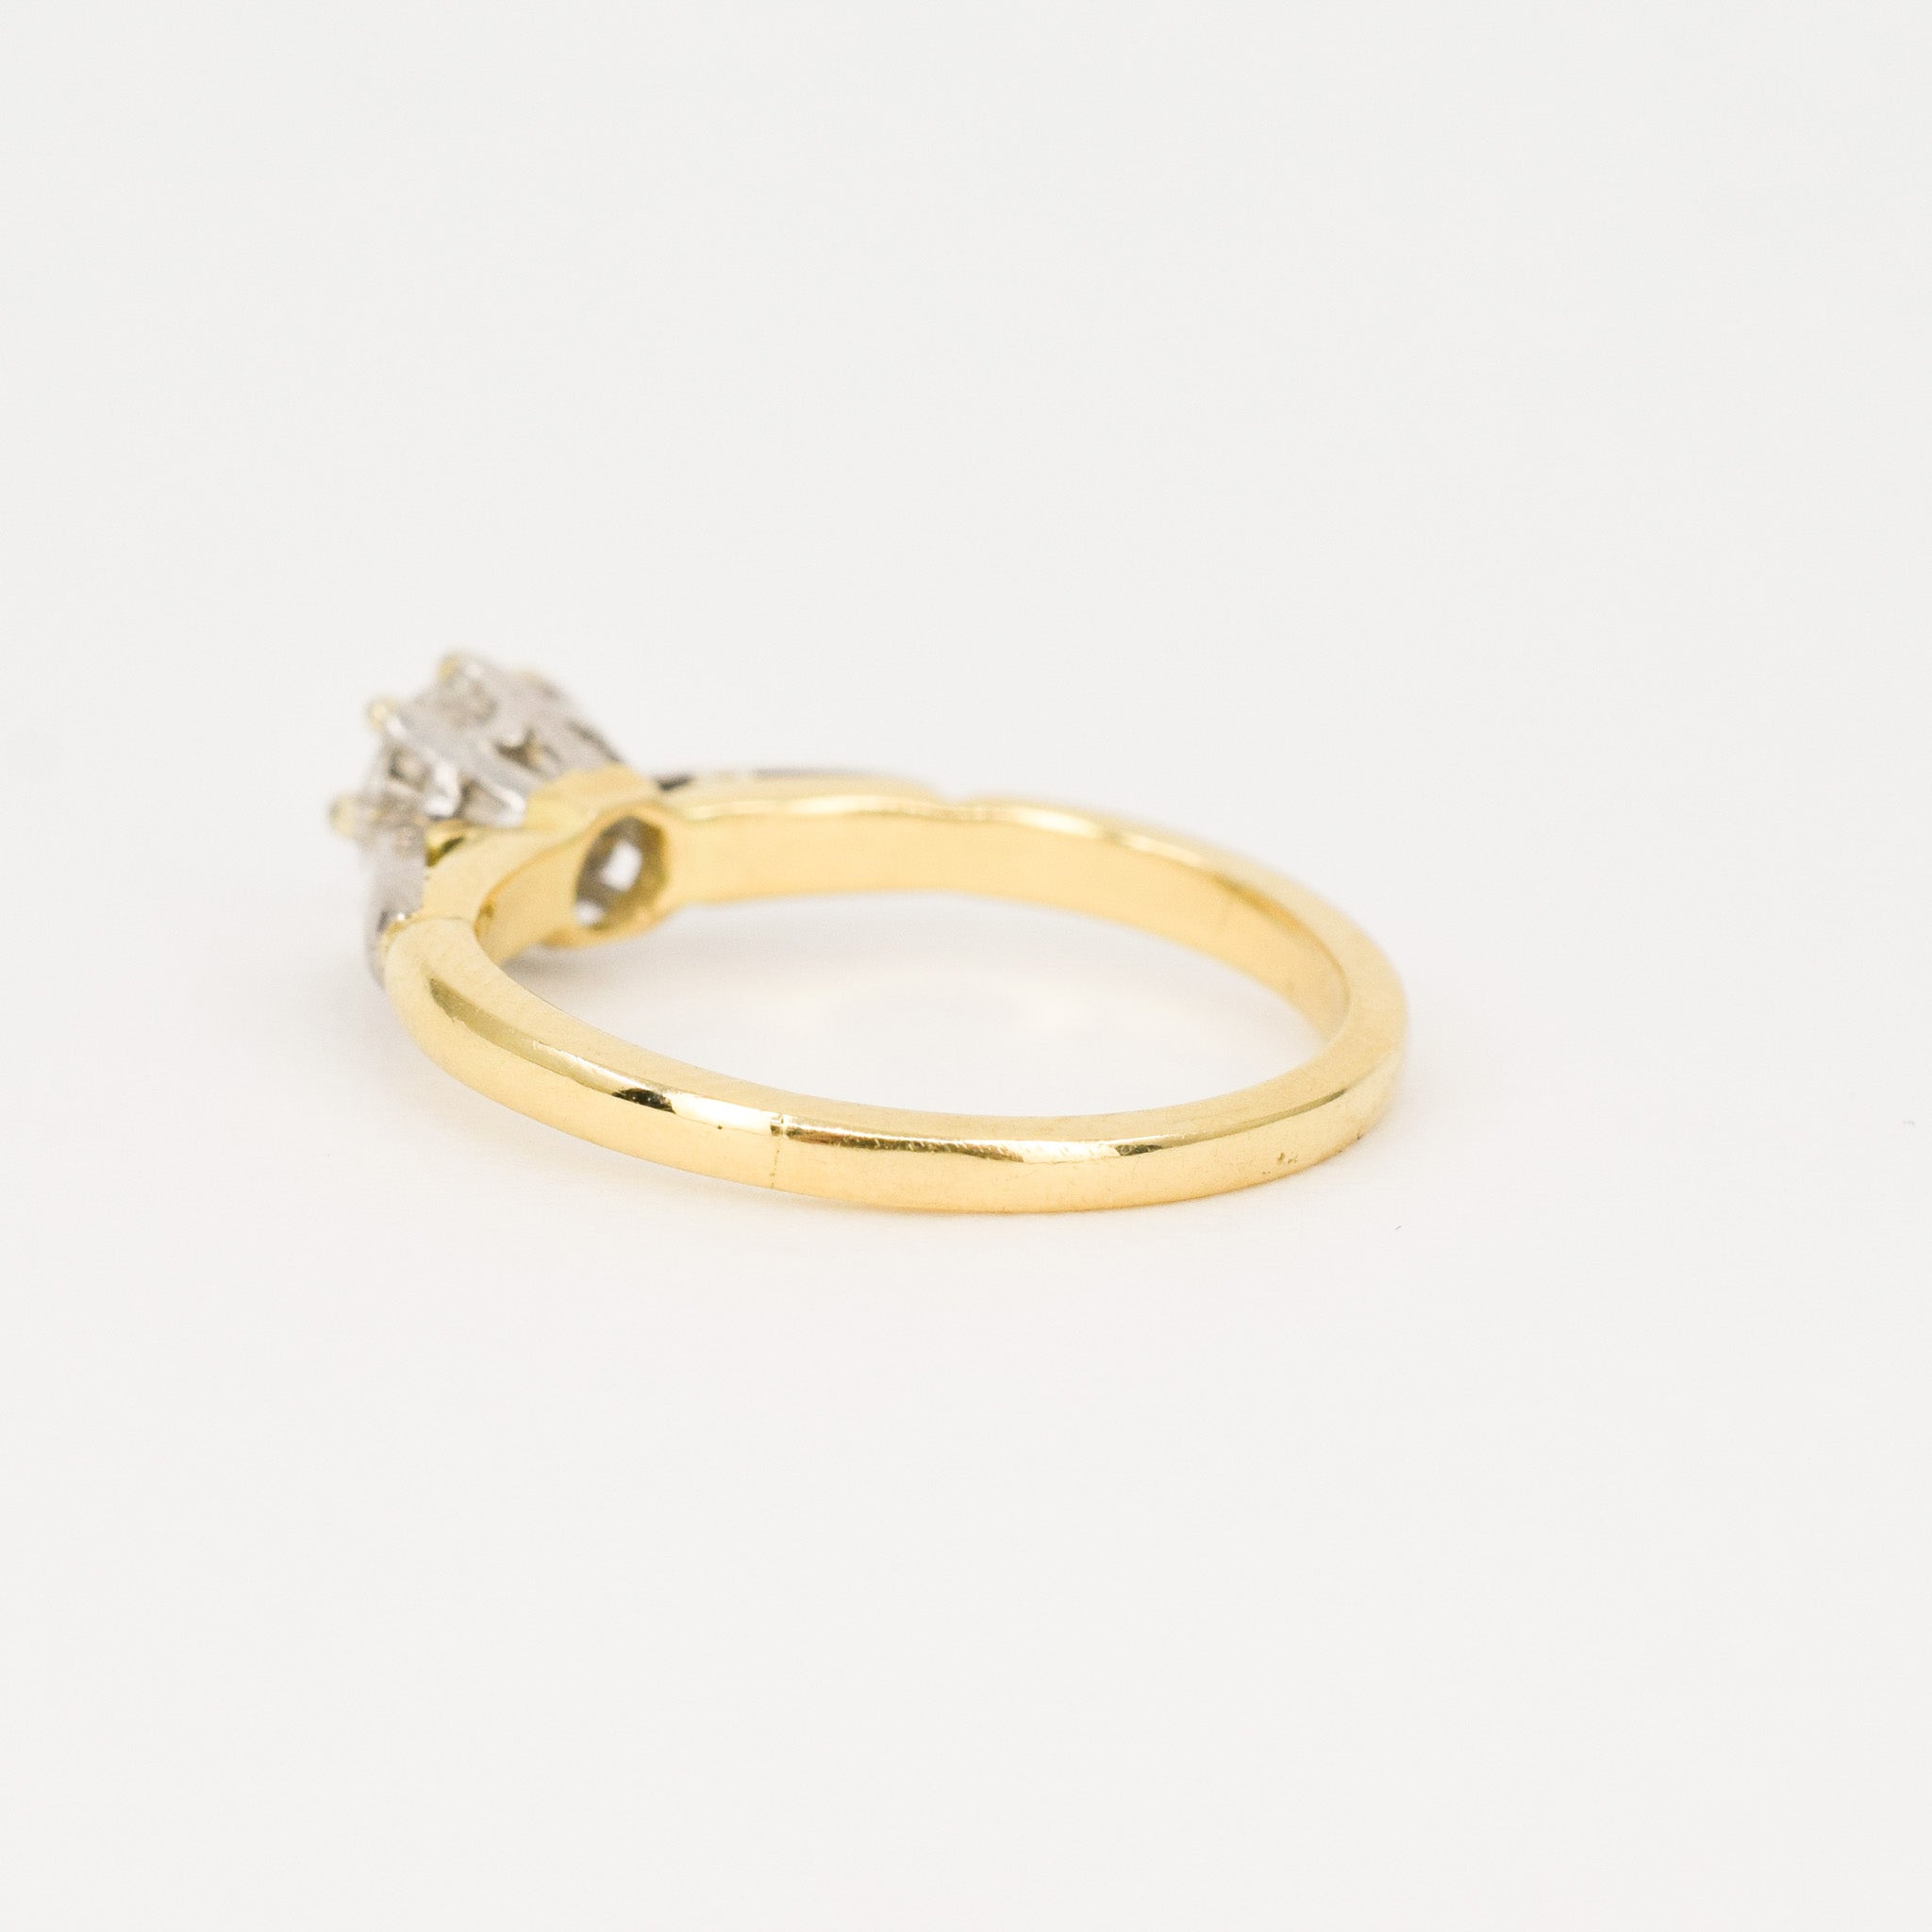 Exquisite Diamond Solitaire Ring (18k, platinum)